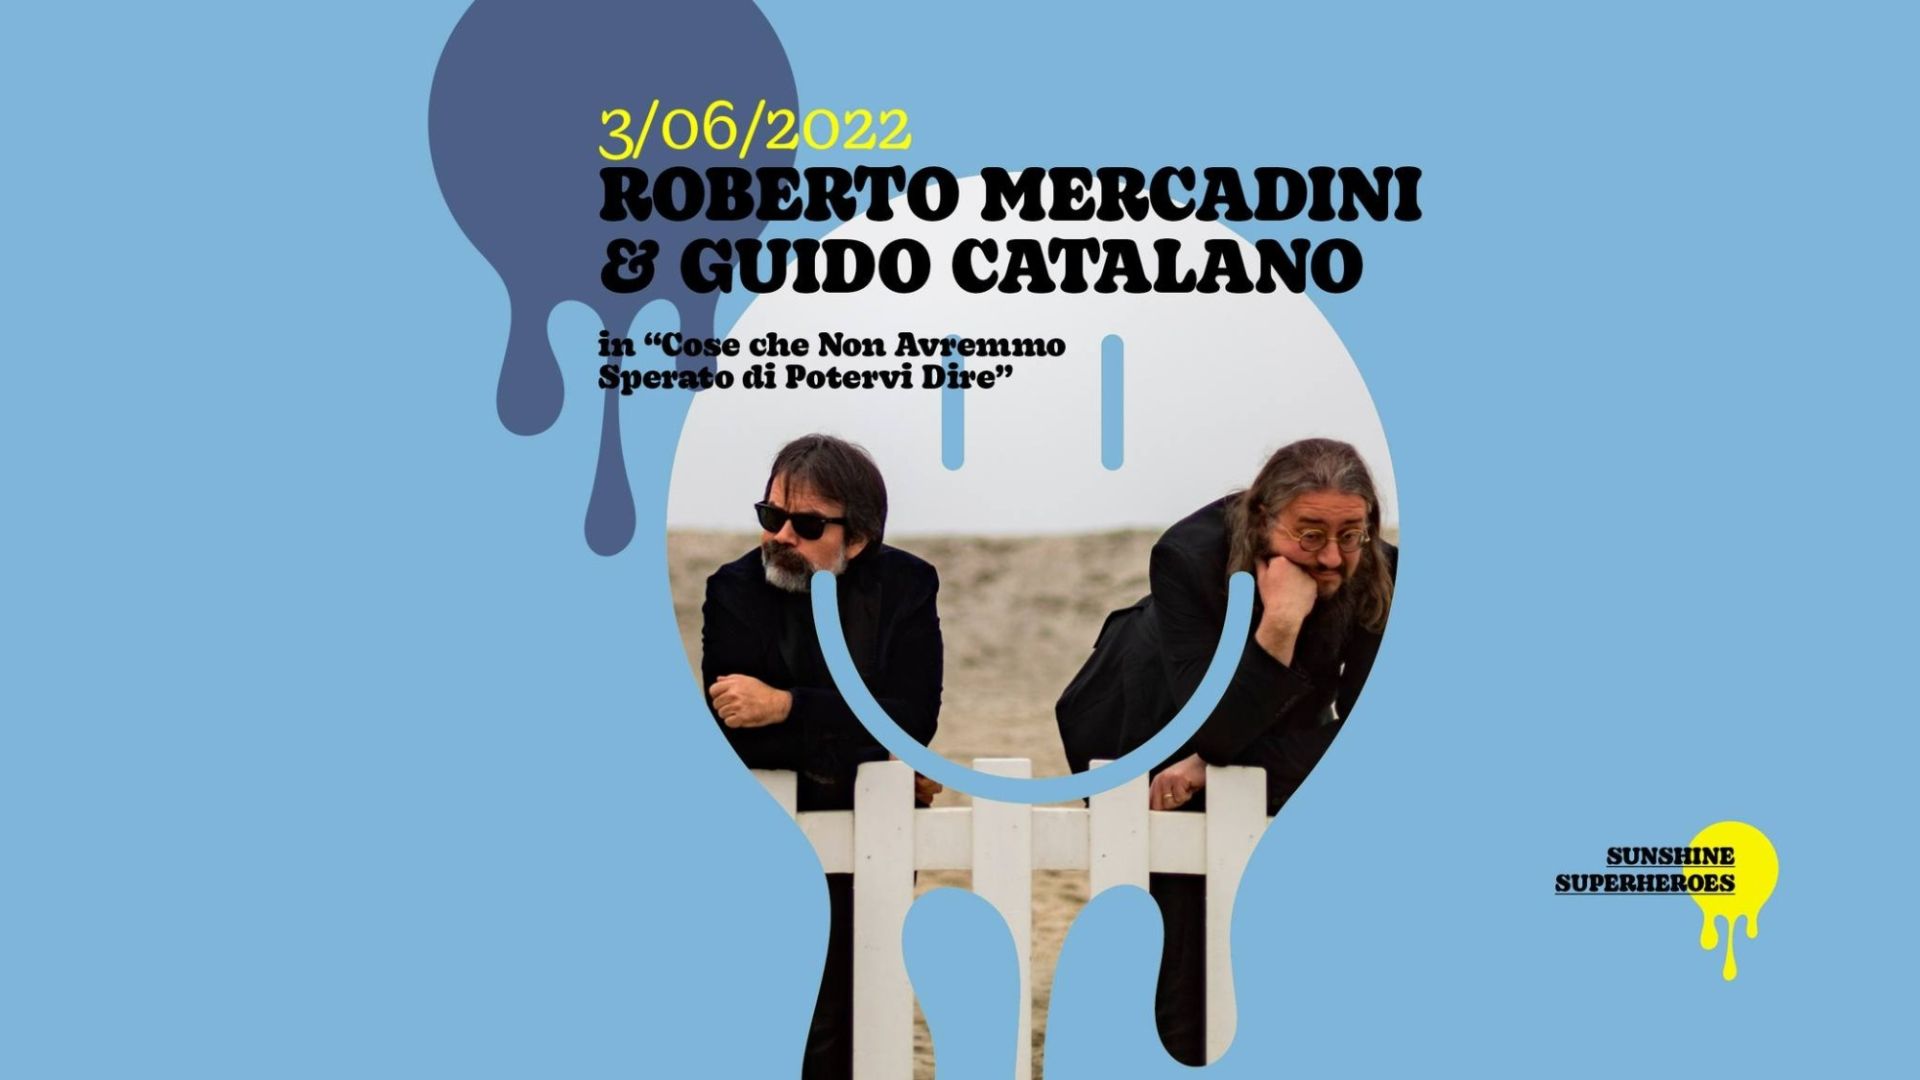 Roberto Mercadini & Guido Catalano